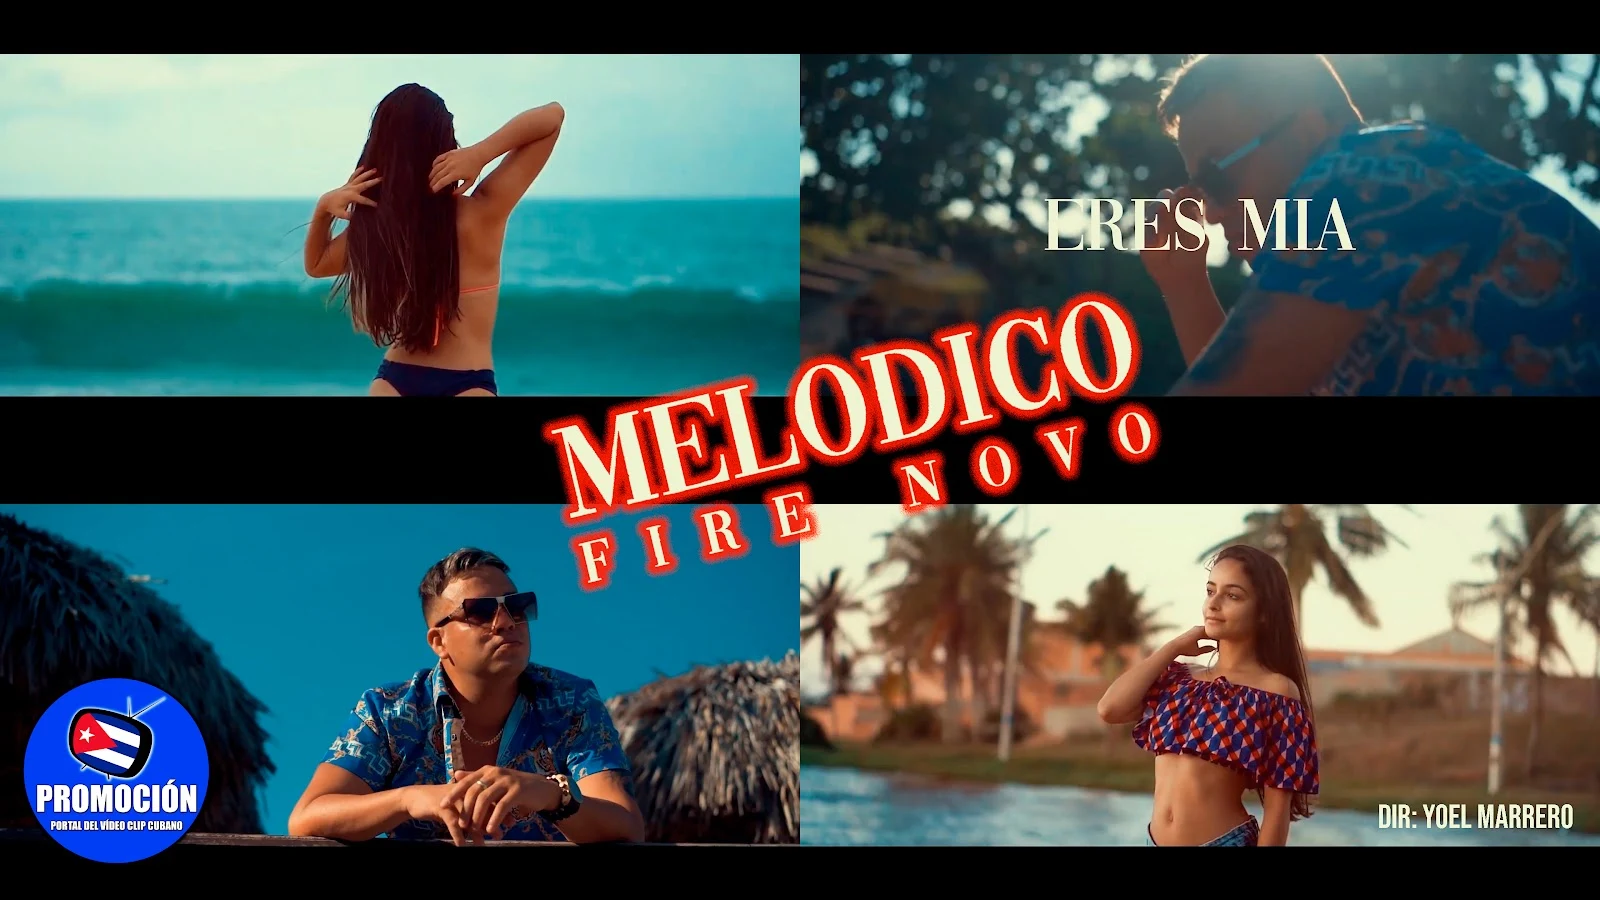 Fire Novo (Melódico) - ¨Eres mía¨ - Videoclip - Director: Yoel Marrero. Portal Del Vídeo Clip Cubano. Música urbana cubana. Reguetón. Cuba.